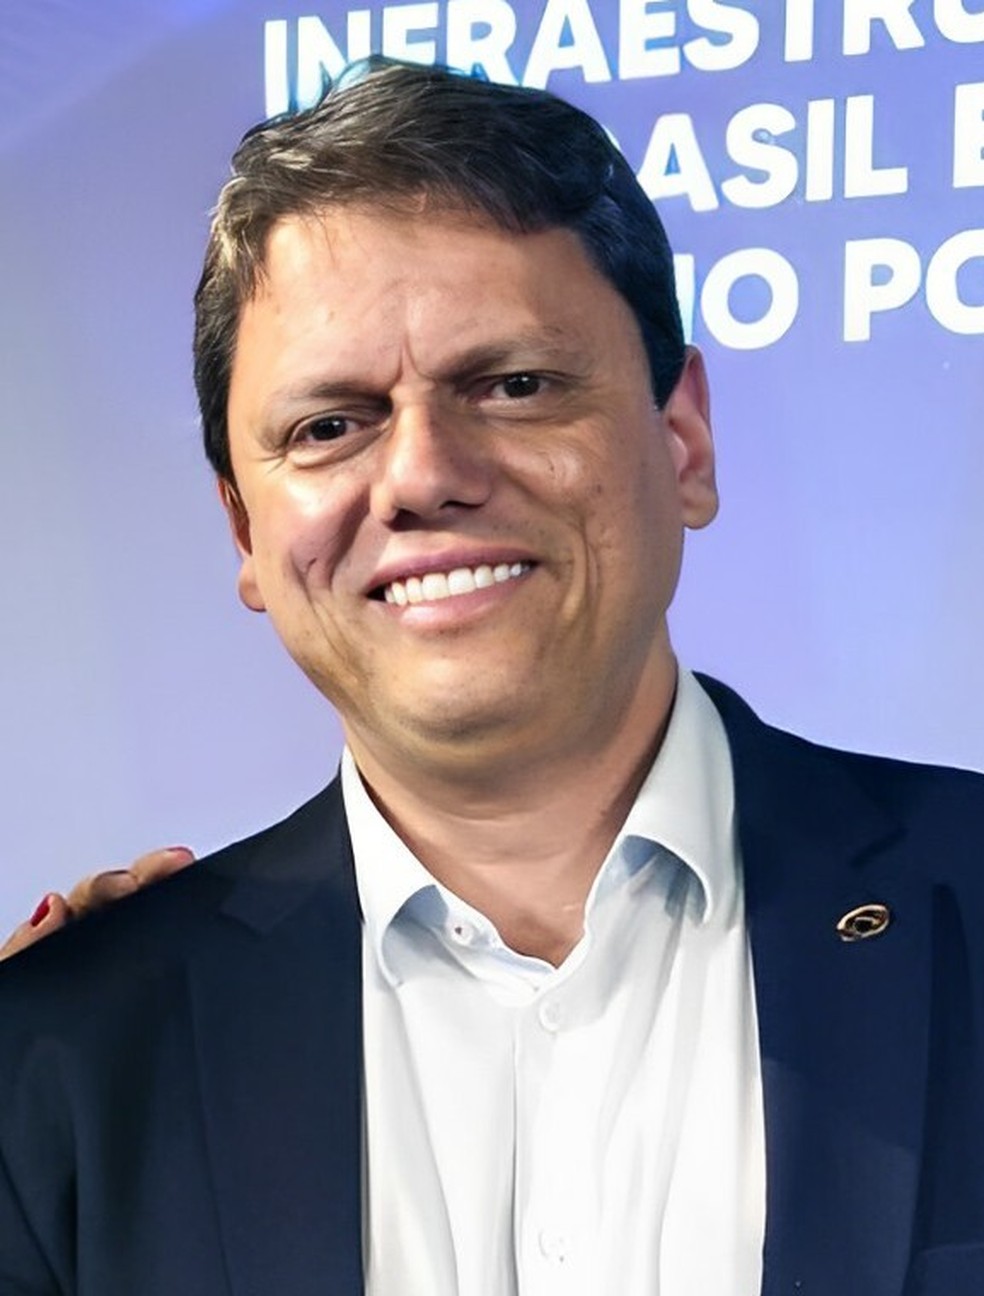 Procuradores ainda pedem uma multa de R$ 20,1 milhões a ser imposta ao ex-ministro — Foto: Assessoria da deputada Valéria Bolsonaro/Alesp, CC BY 4.0 <https://creativecommons.org/licenses/by/4.0>, via Wikimedia Commons